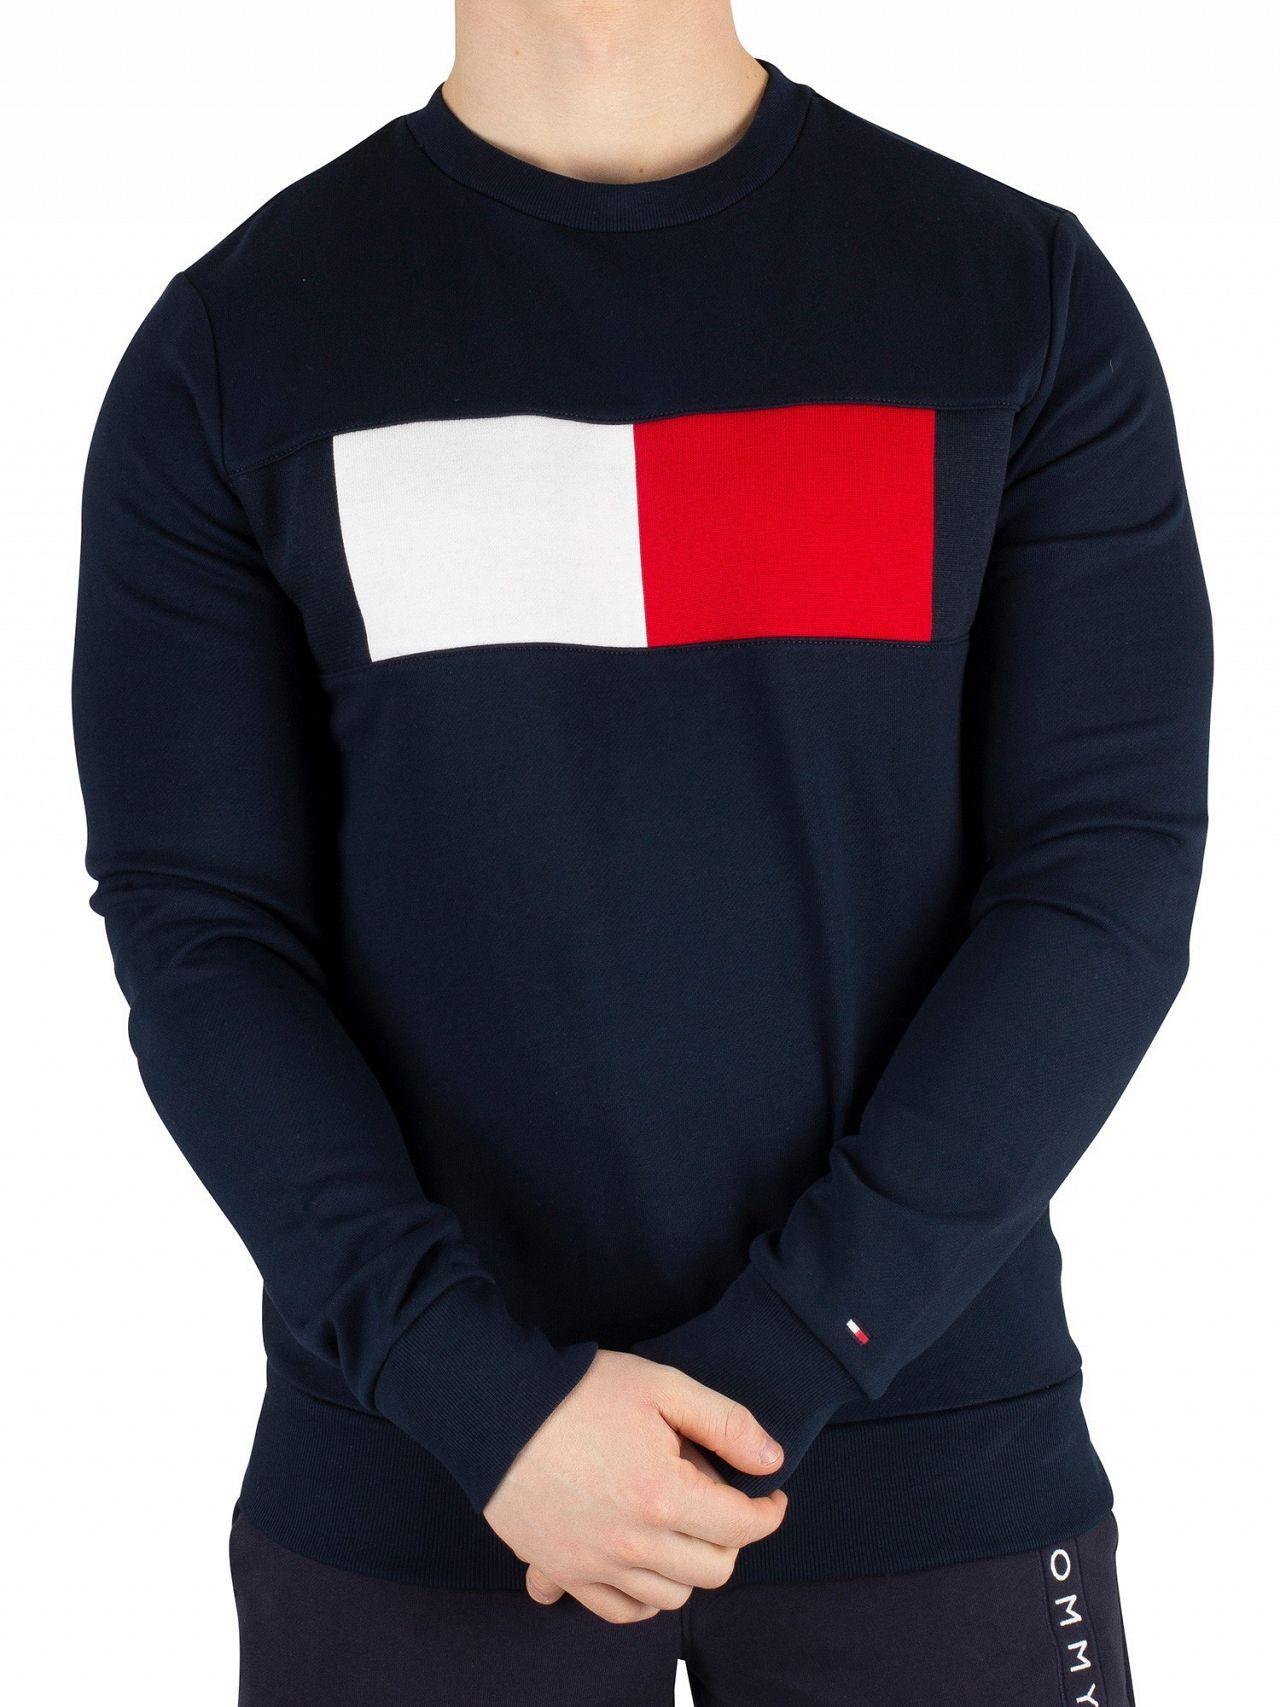 tommy hilfiger flag logo sweatshirt